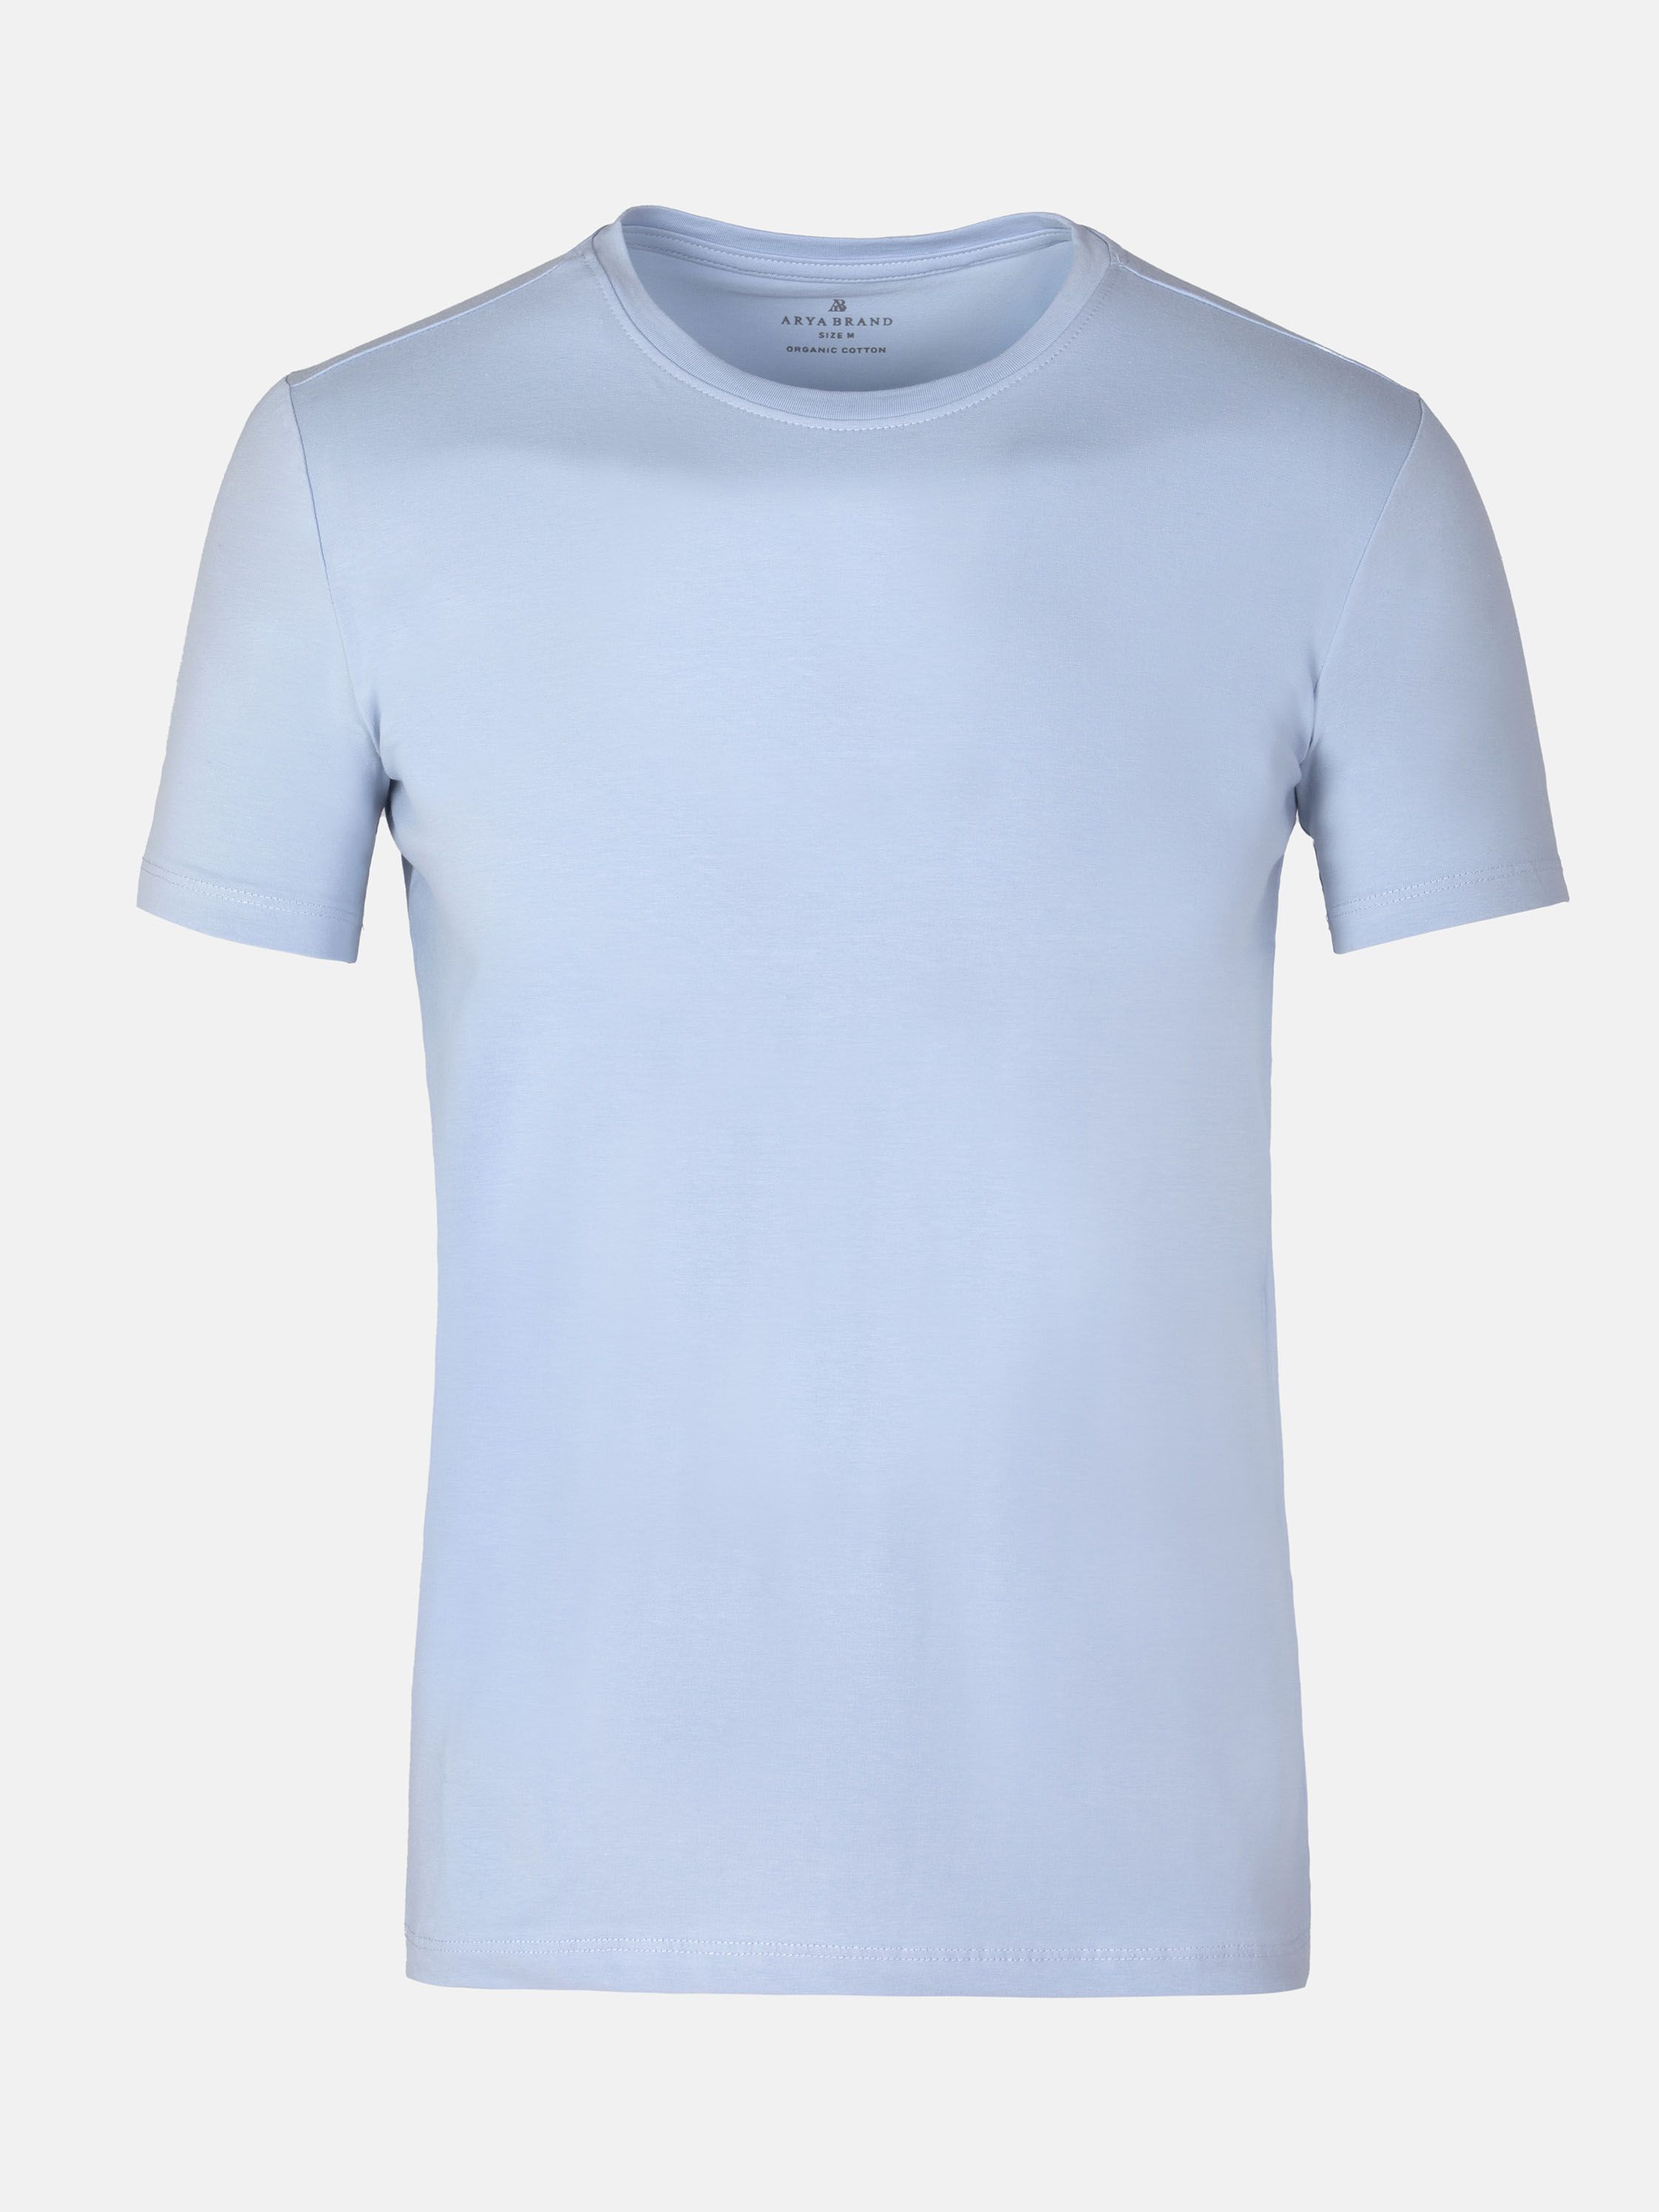 Slim Fit Light Blue T-Shirt |WAM Sky Cut Slim Tee - - Blue Blue Fit Slim Light DENIM Shirt